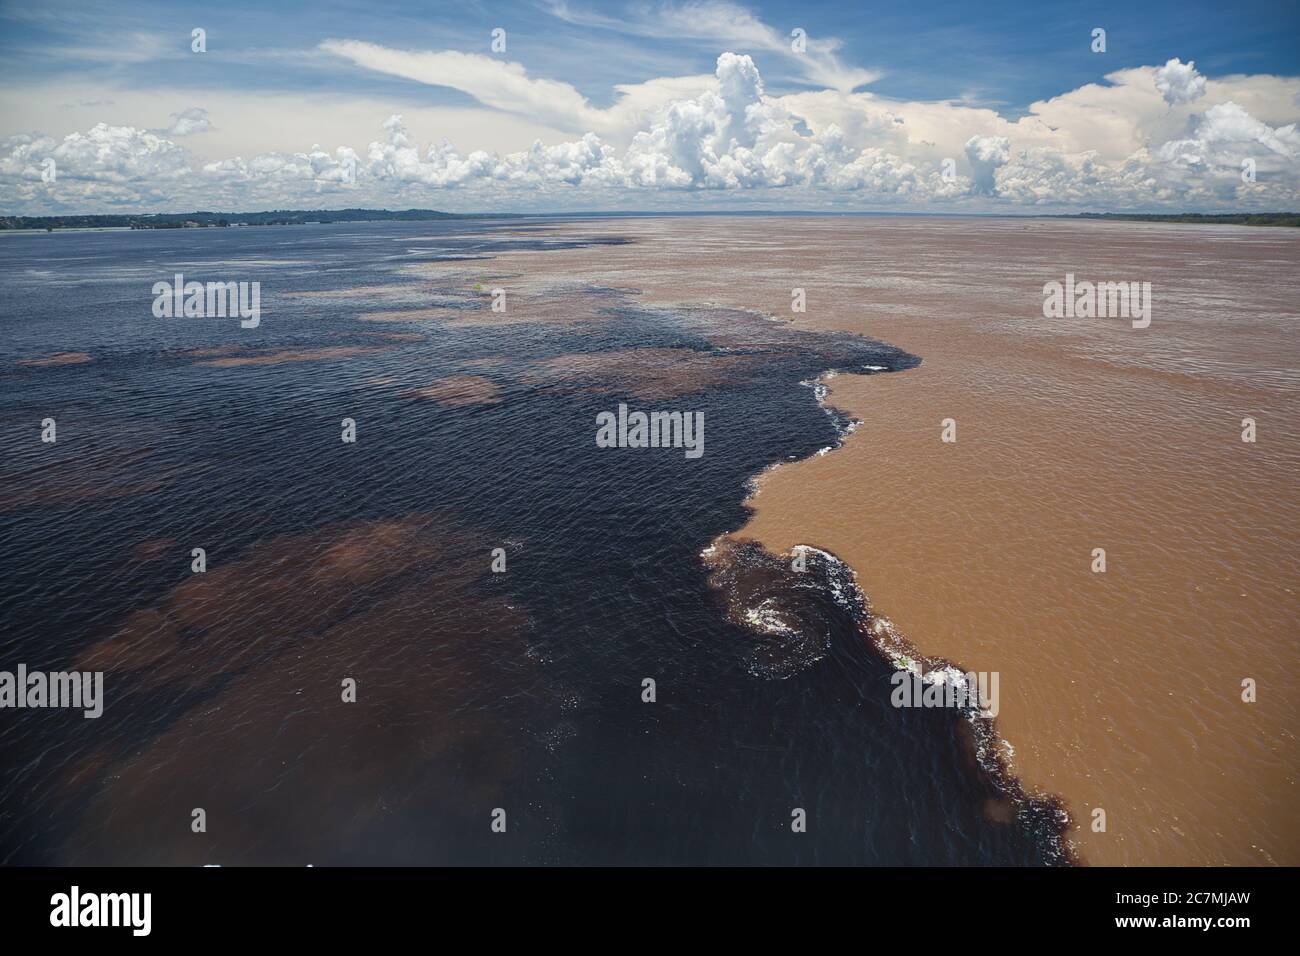 Das Treffen der Gewässer am Zusammenfluss zwischen dem dunklen Rio Negro-Fluss und dem sandigen Amazonas-Fluss, bei Manaus im brasilianischen Amazonas-Staat Stockfoto